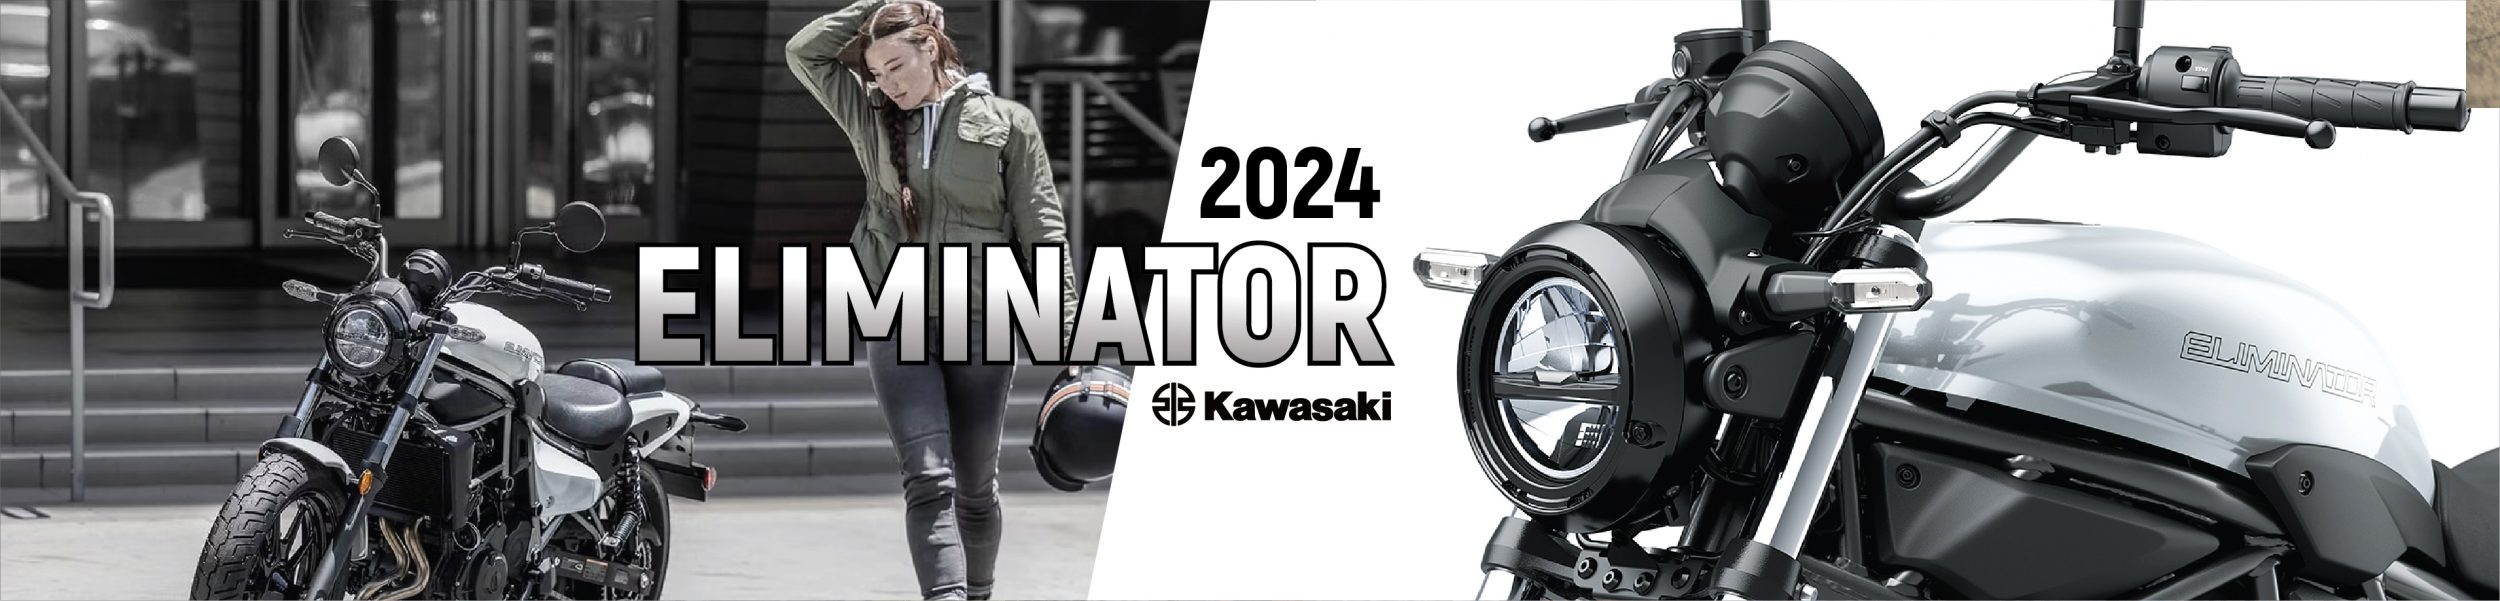 kawasaki eliminator 2024